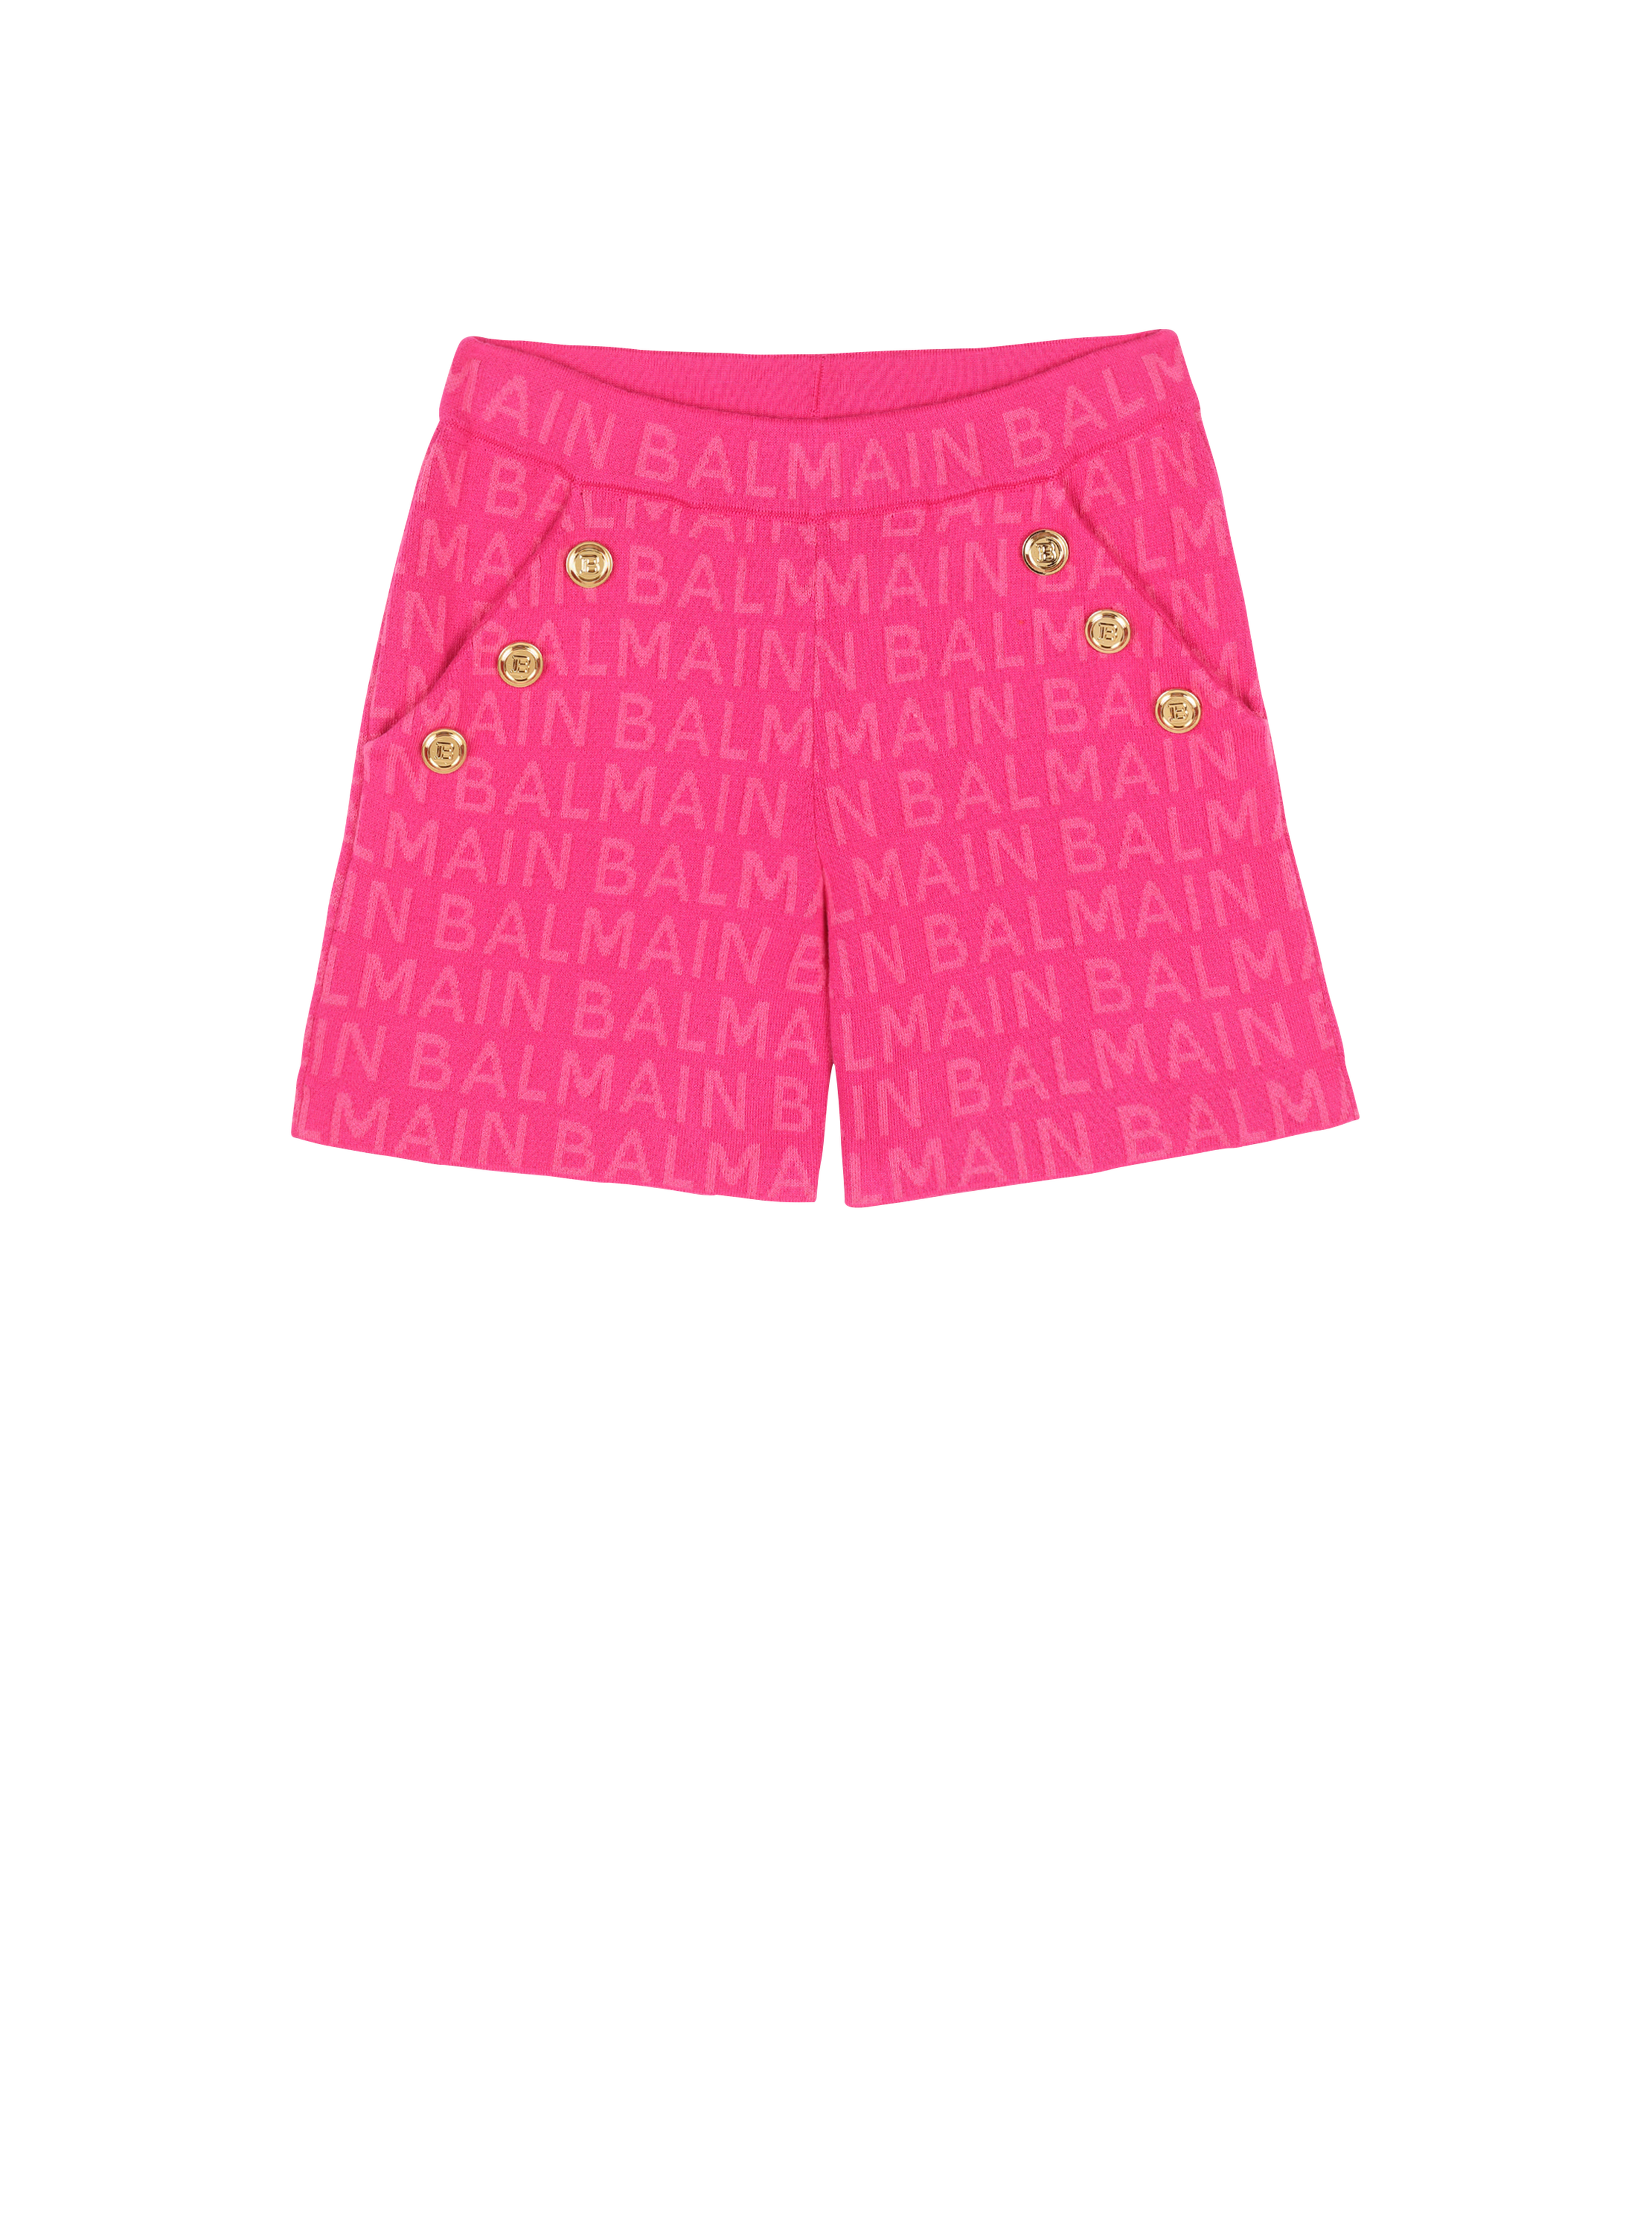 Shorts in cotone con logo Balmain, rosa